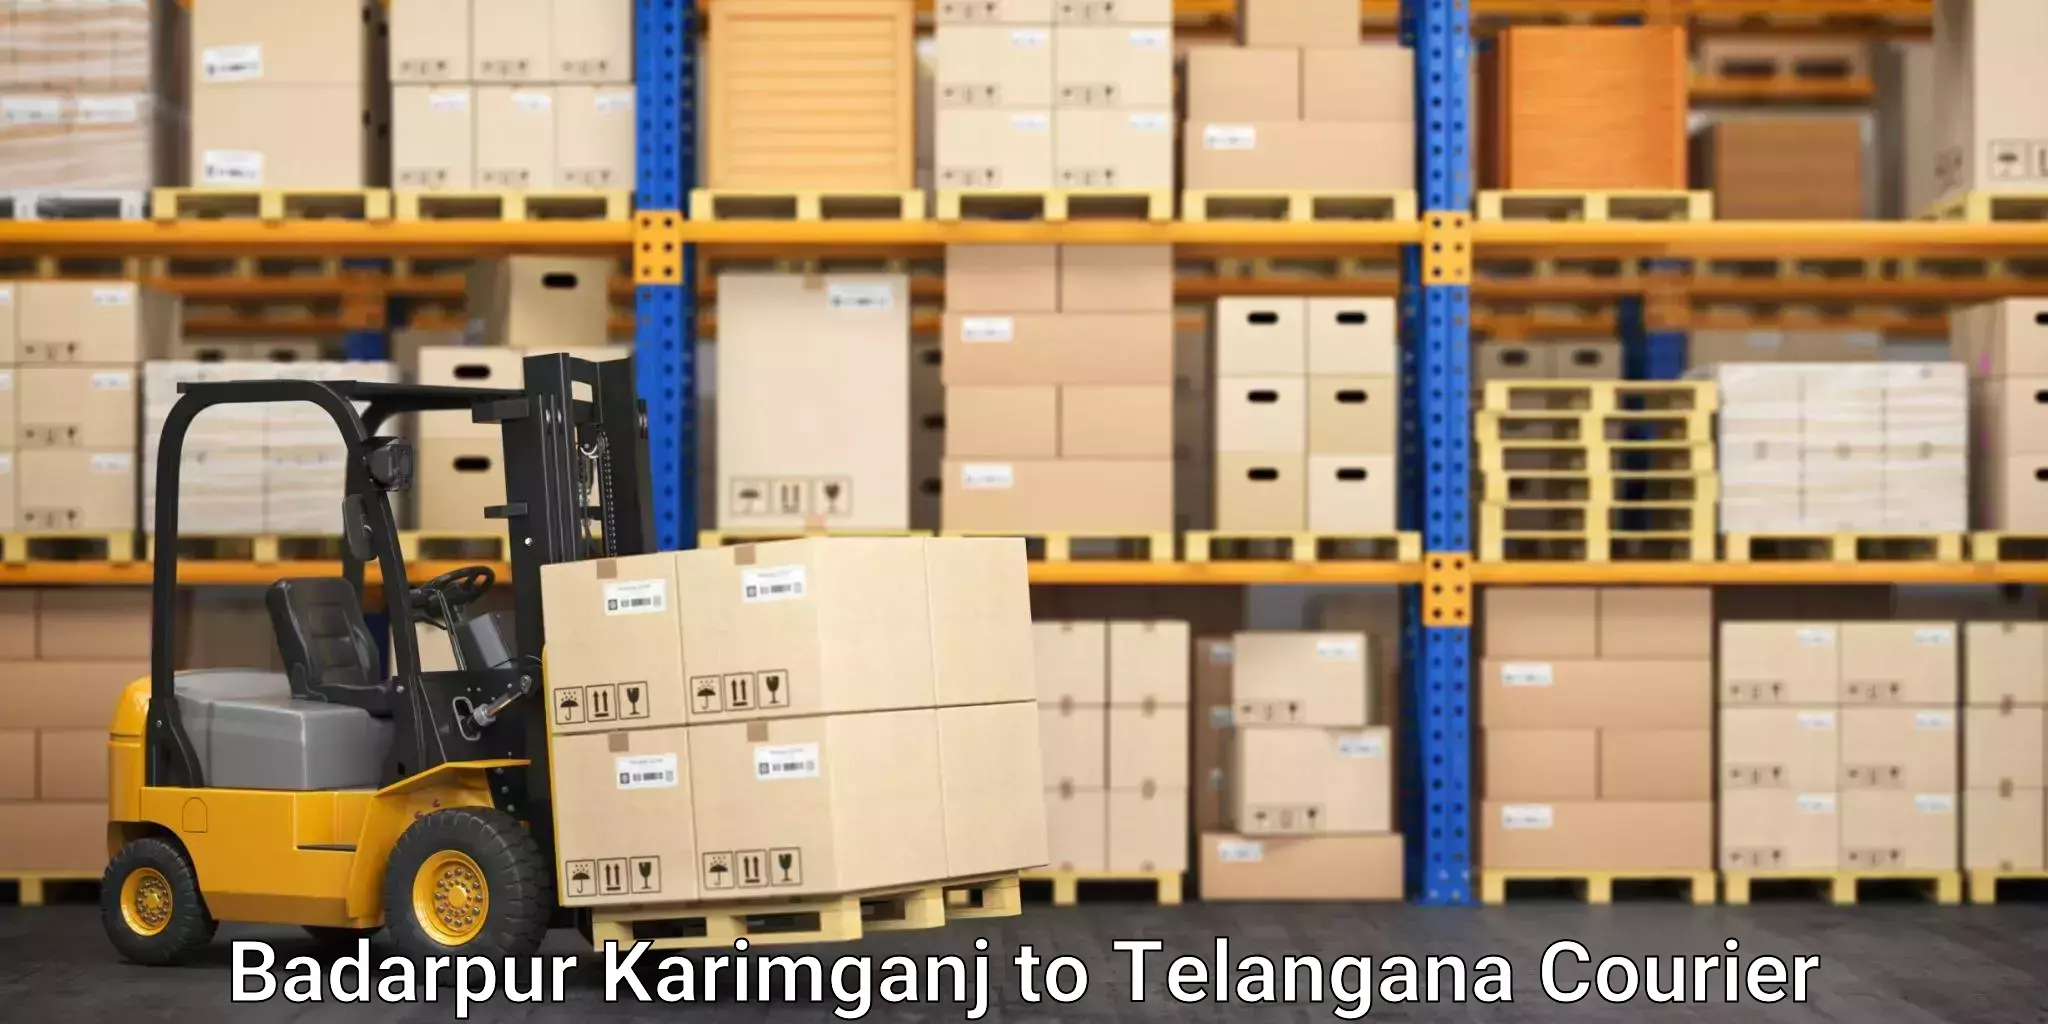 Efficient cargo handling in Badarpur Karimganj to Khanapur Nirmal